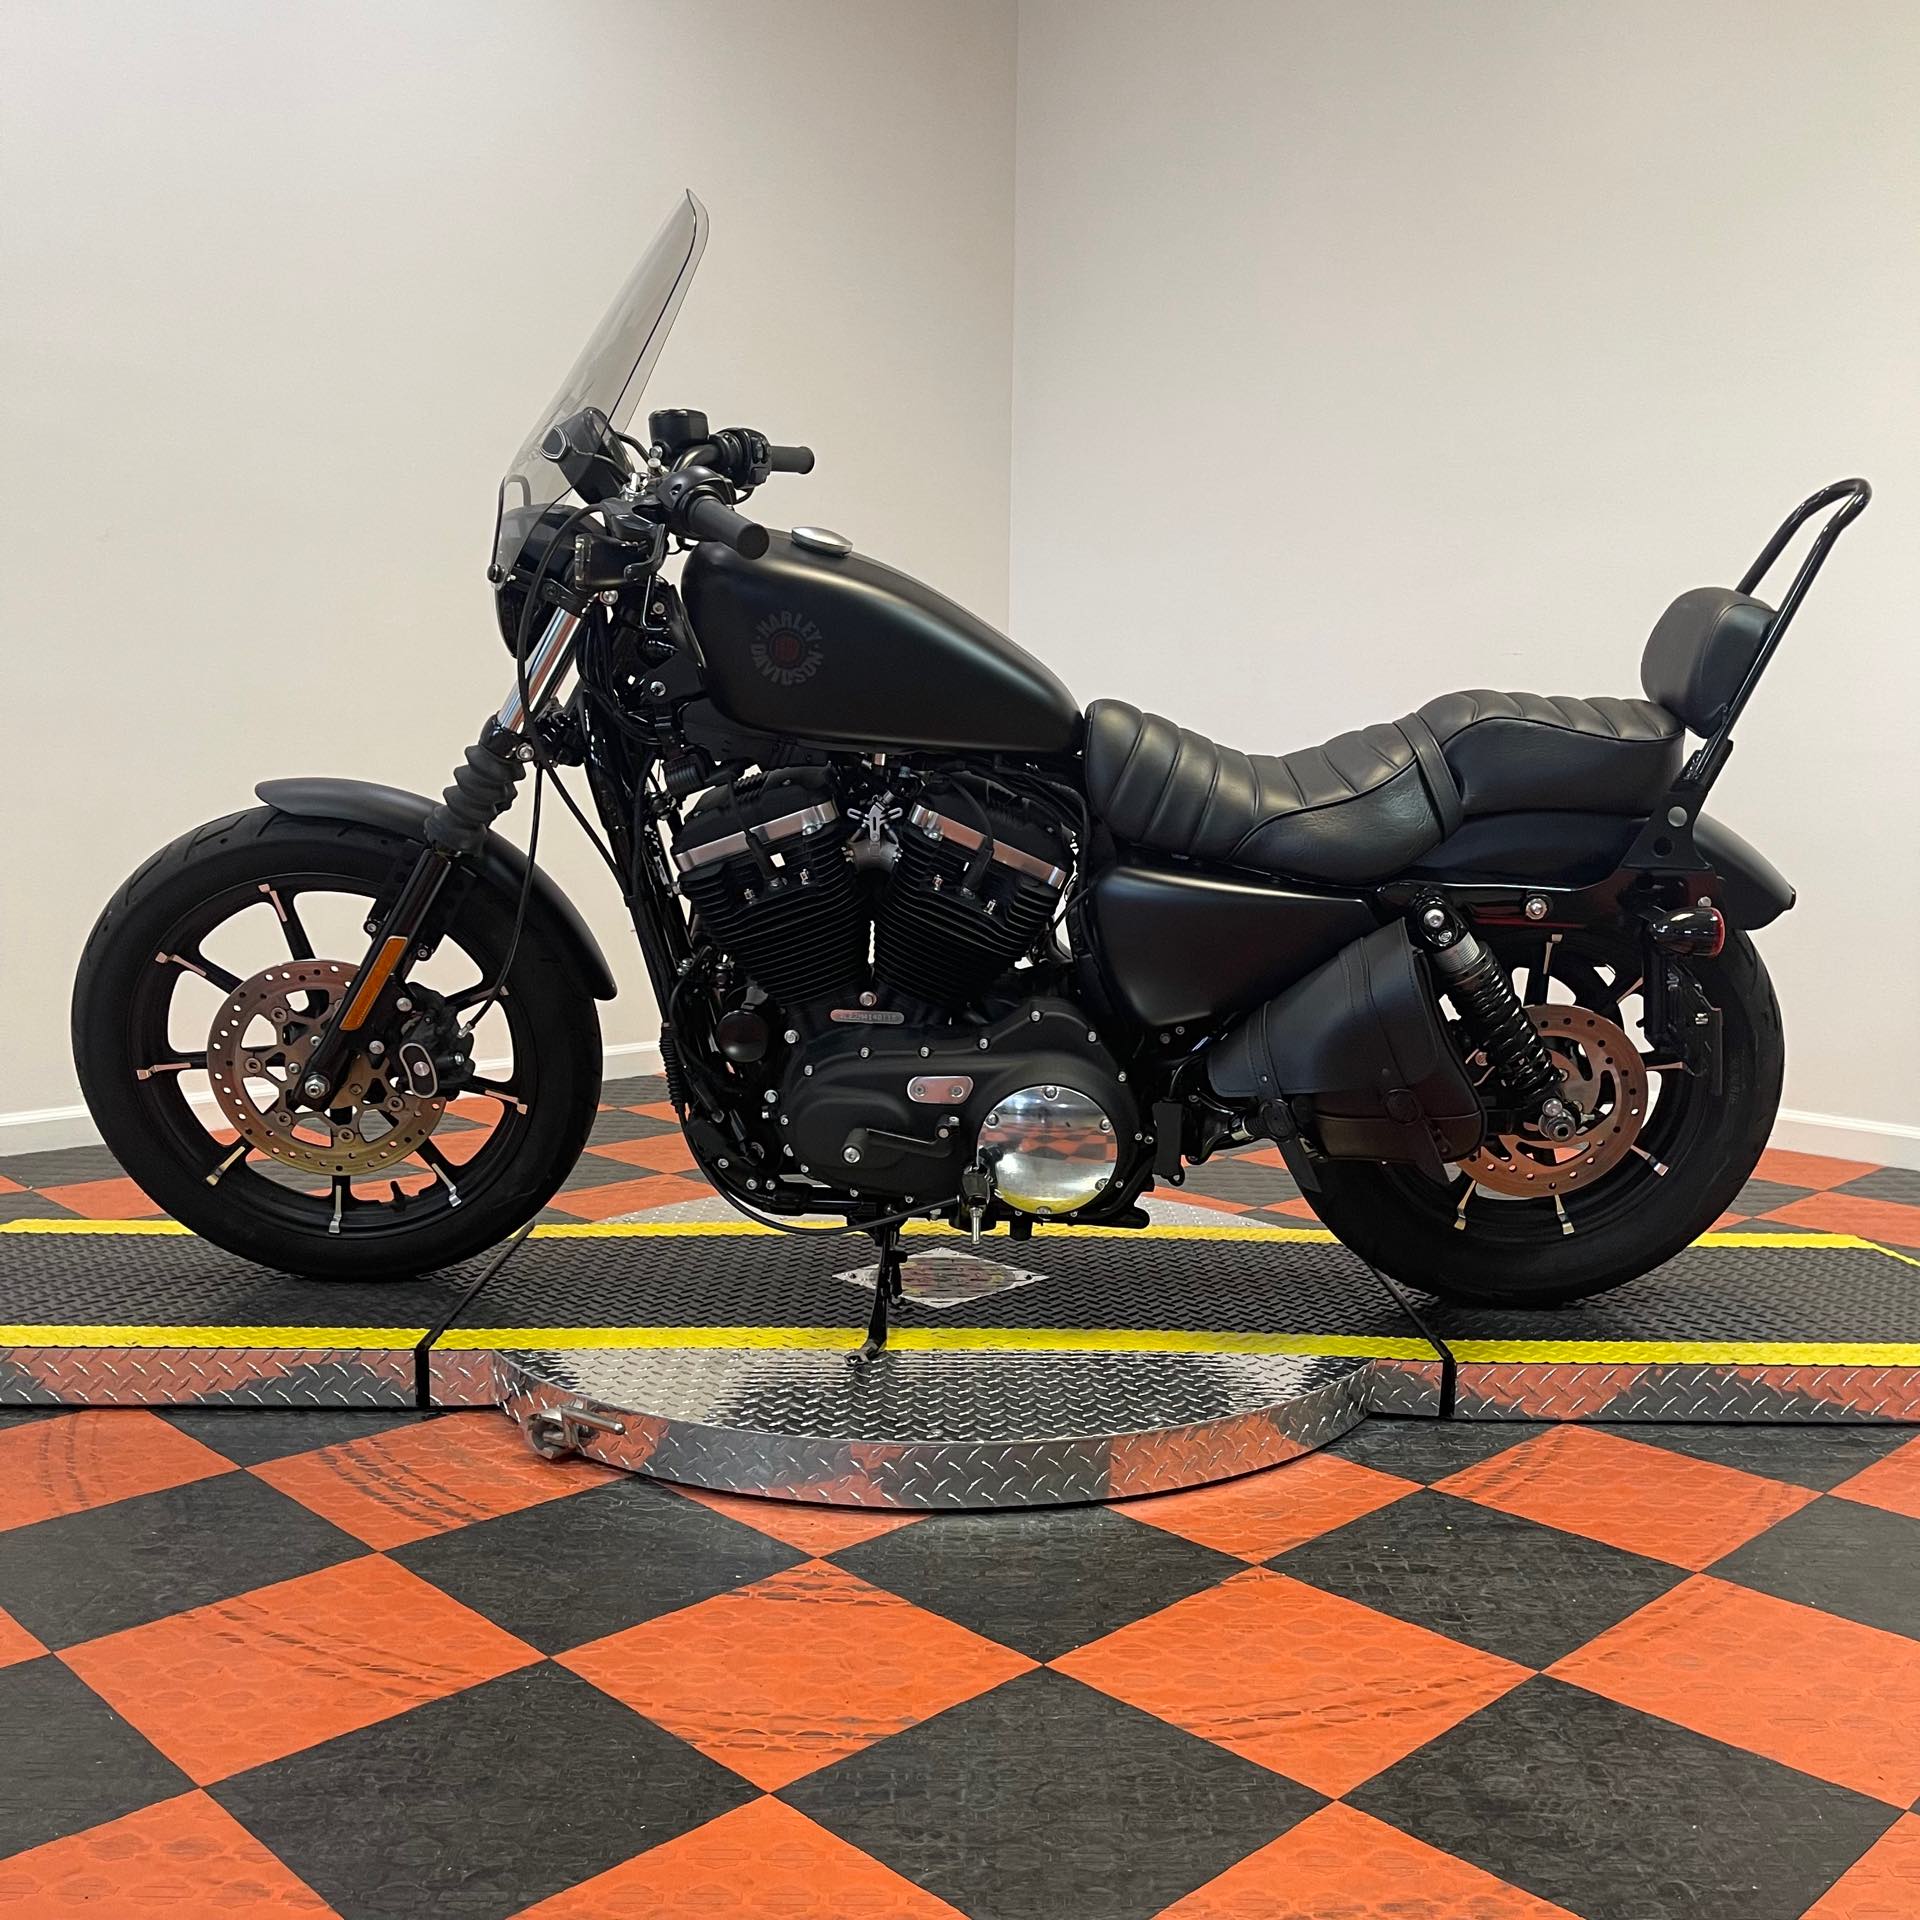 2021 Harley-Davidson XL883N at Harley-Davidson of Indianapolis